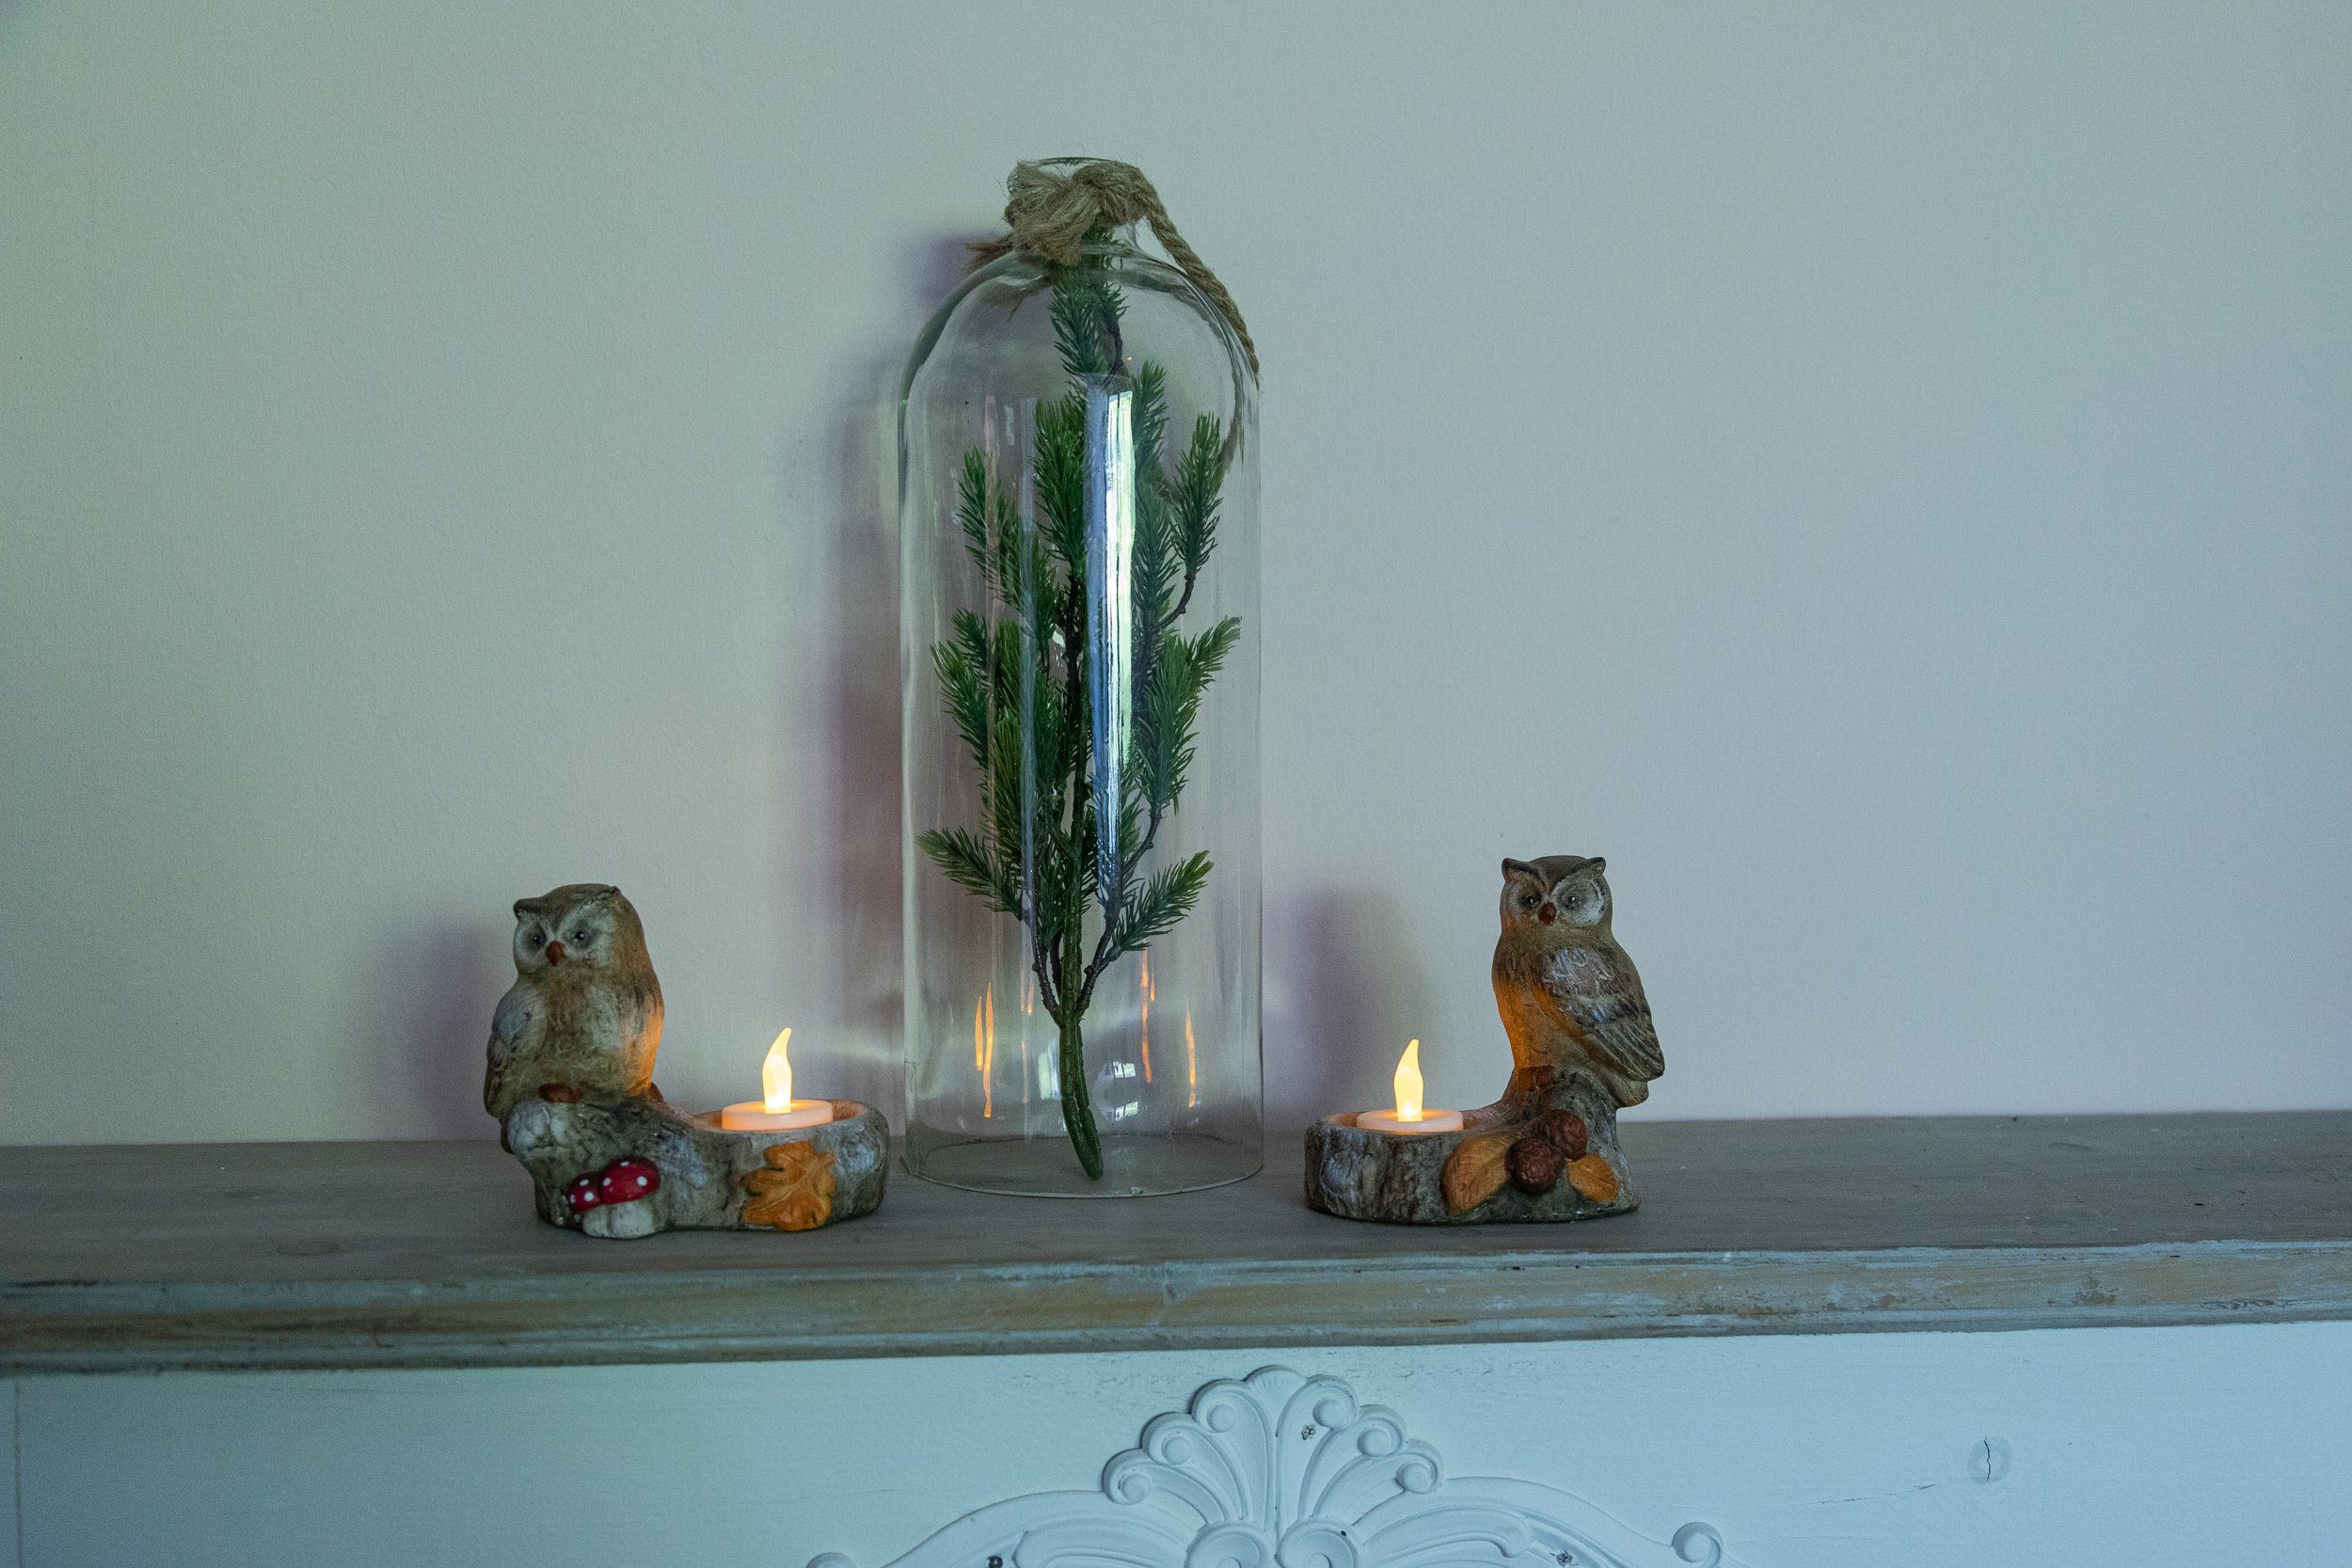 Herbst Dekoration Winter Eulen, Kerzenhalter im für und 2 Wohnando Teelichthalter gemütliche